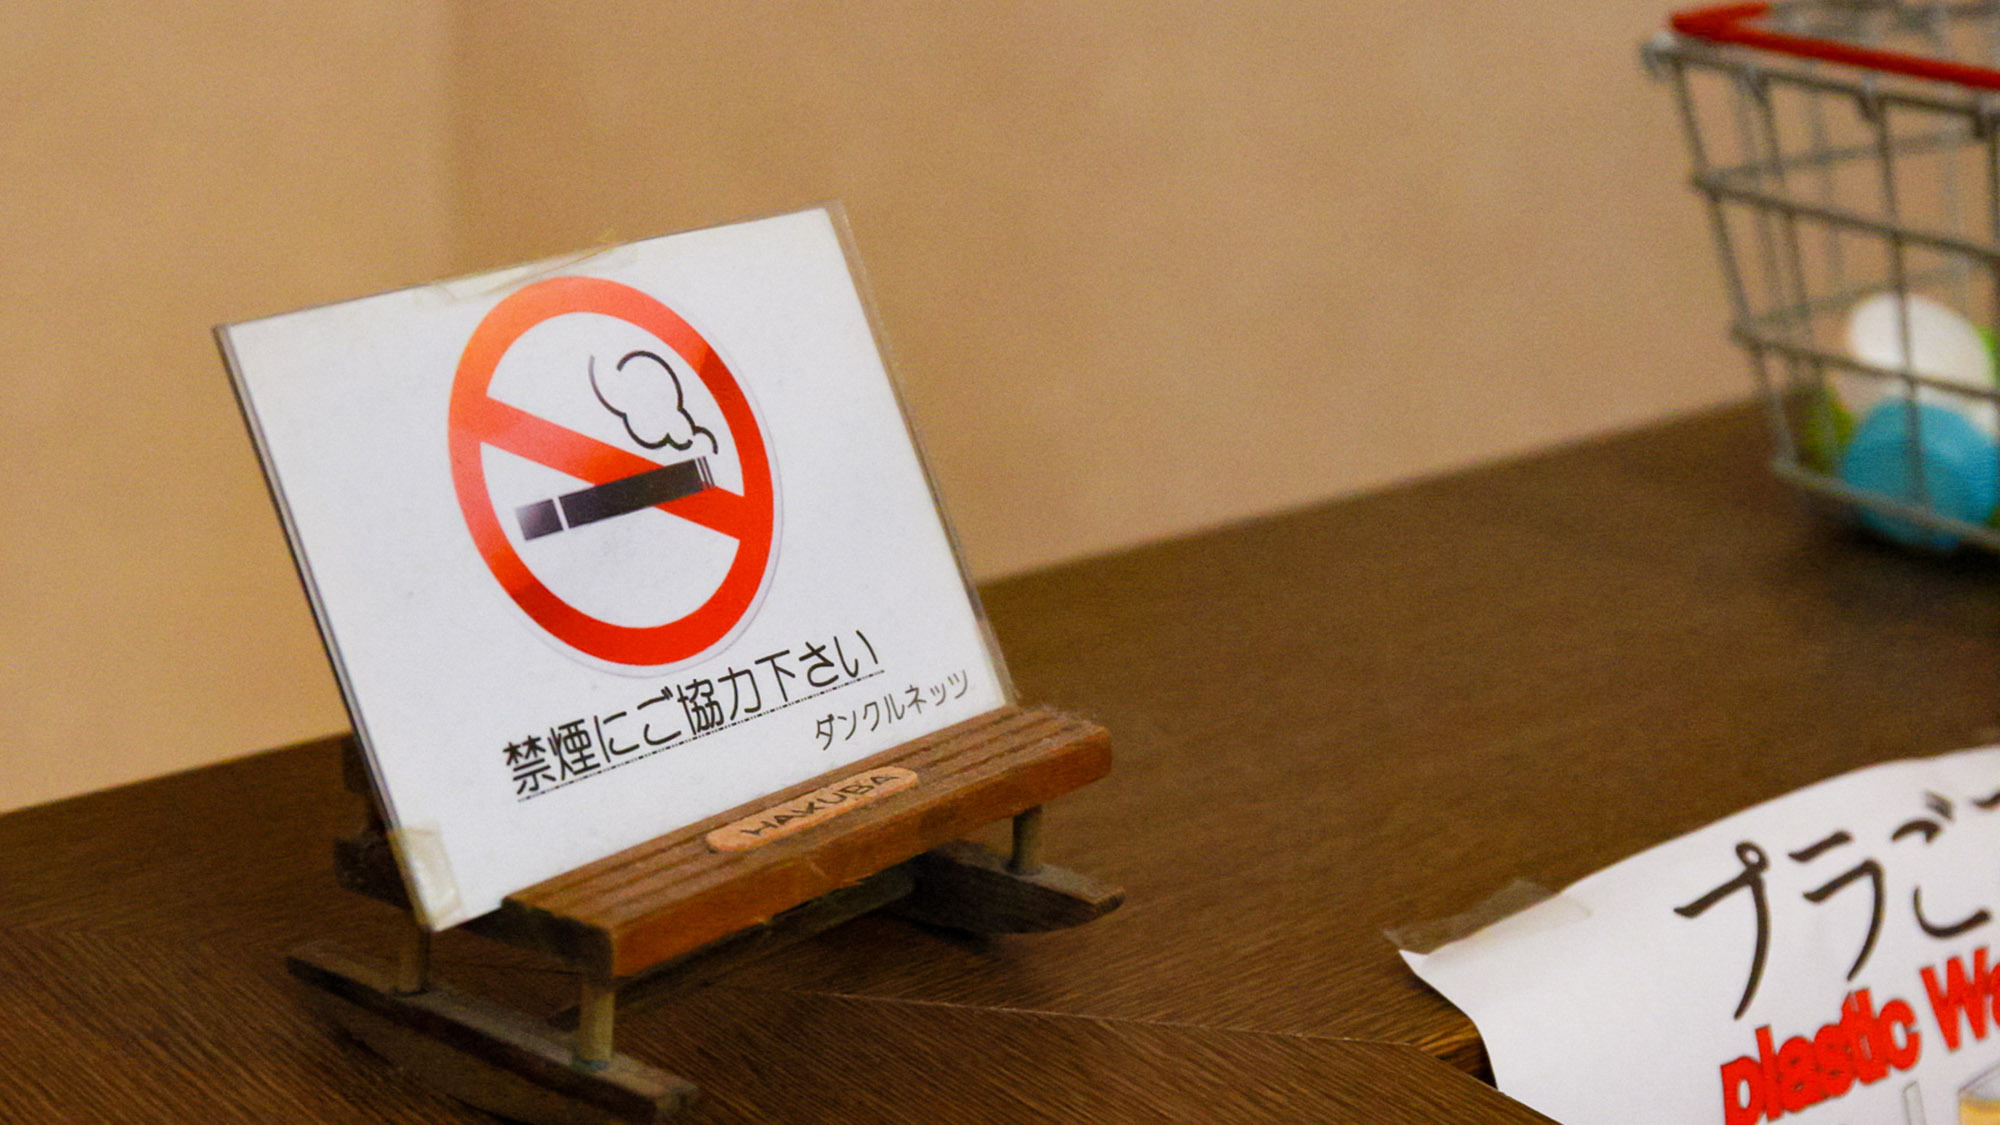 ・全館禁煙となっております。喫煙される方は喫煙所もございますのでそちらをご利用ください